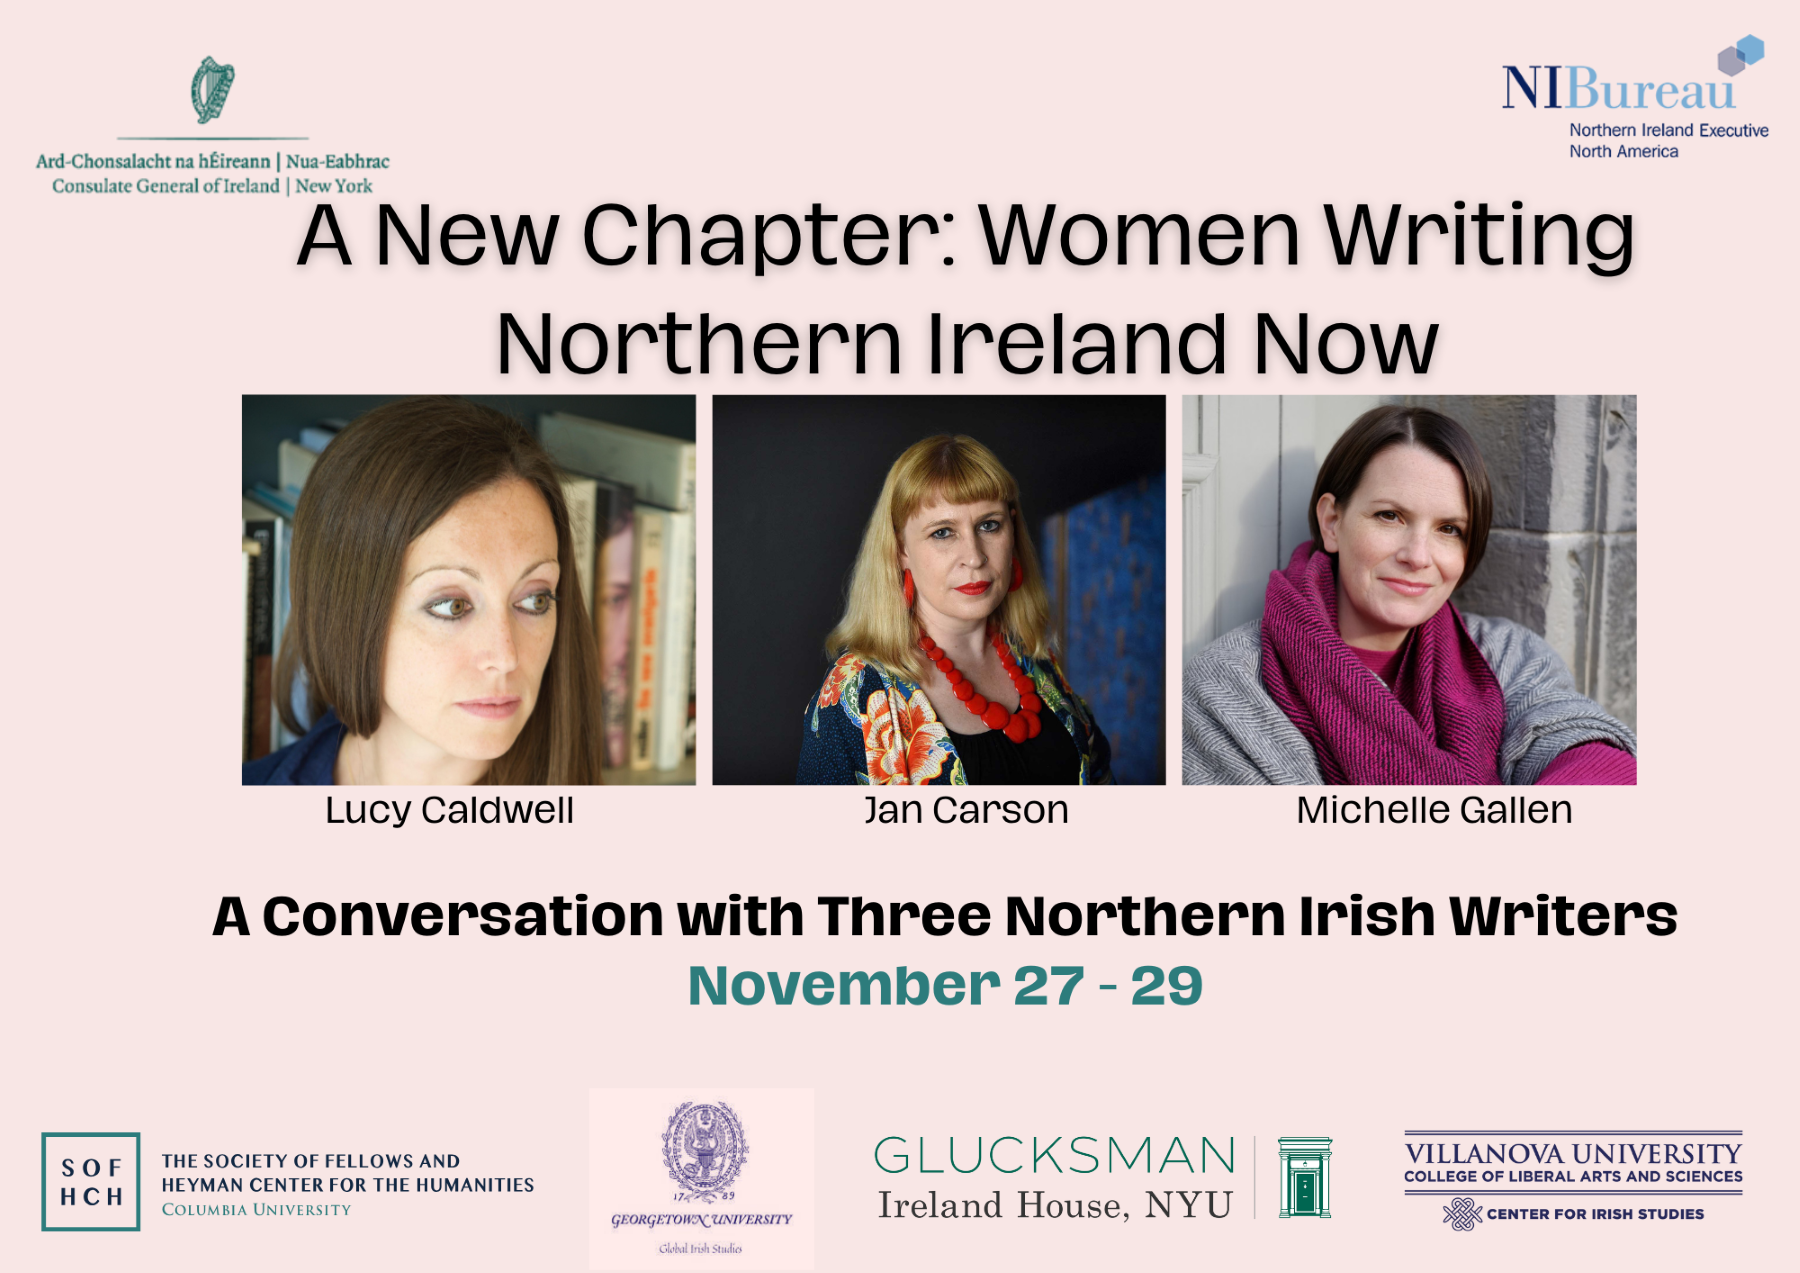 Three Northern Irish Women Writers on Tour This November